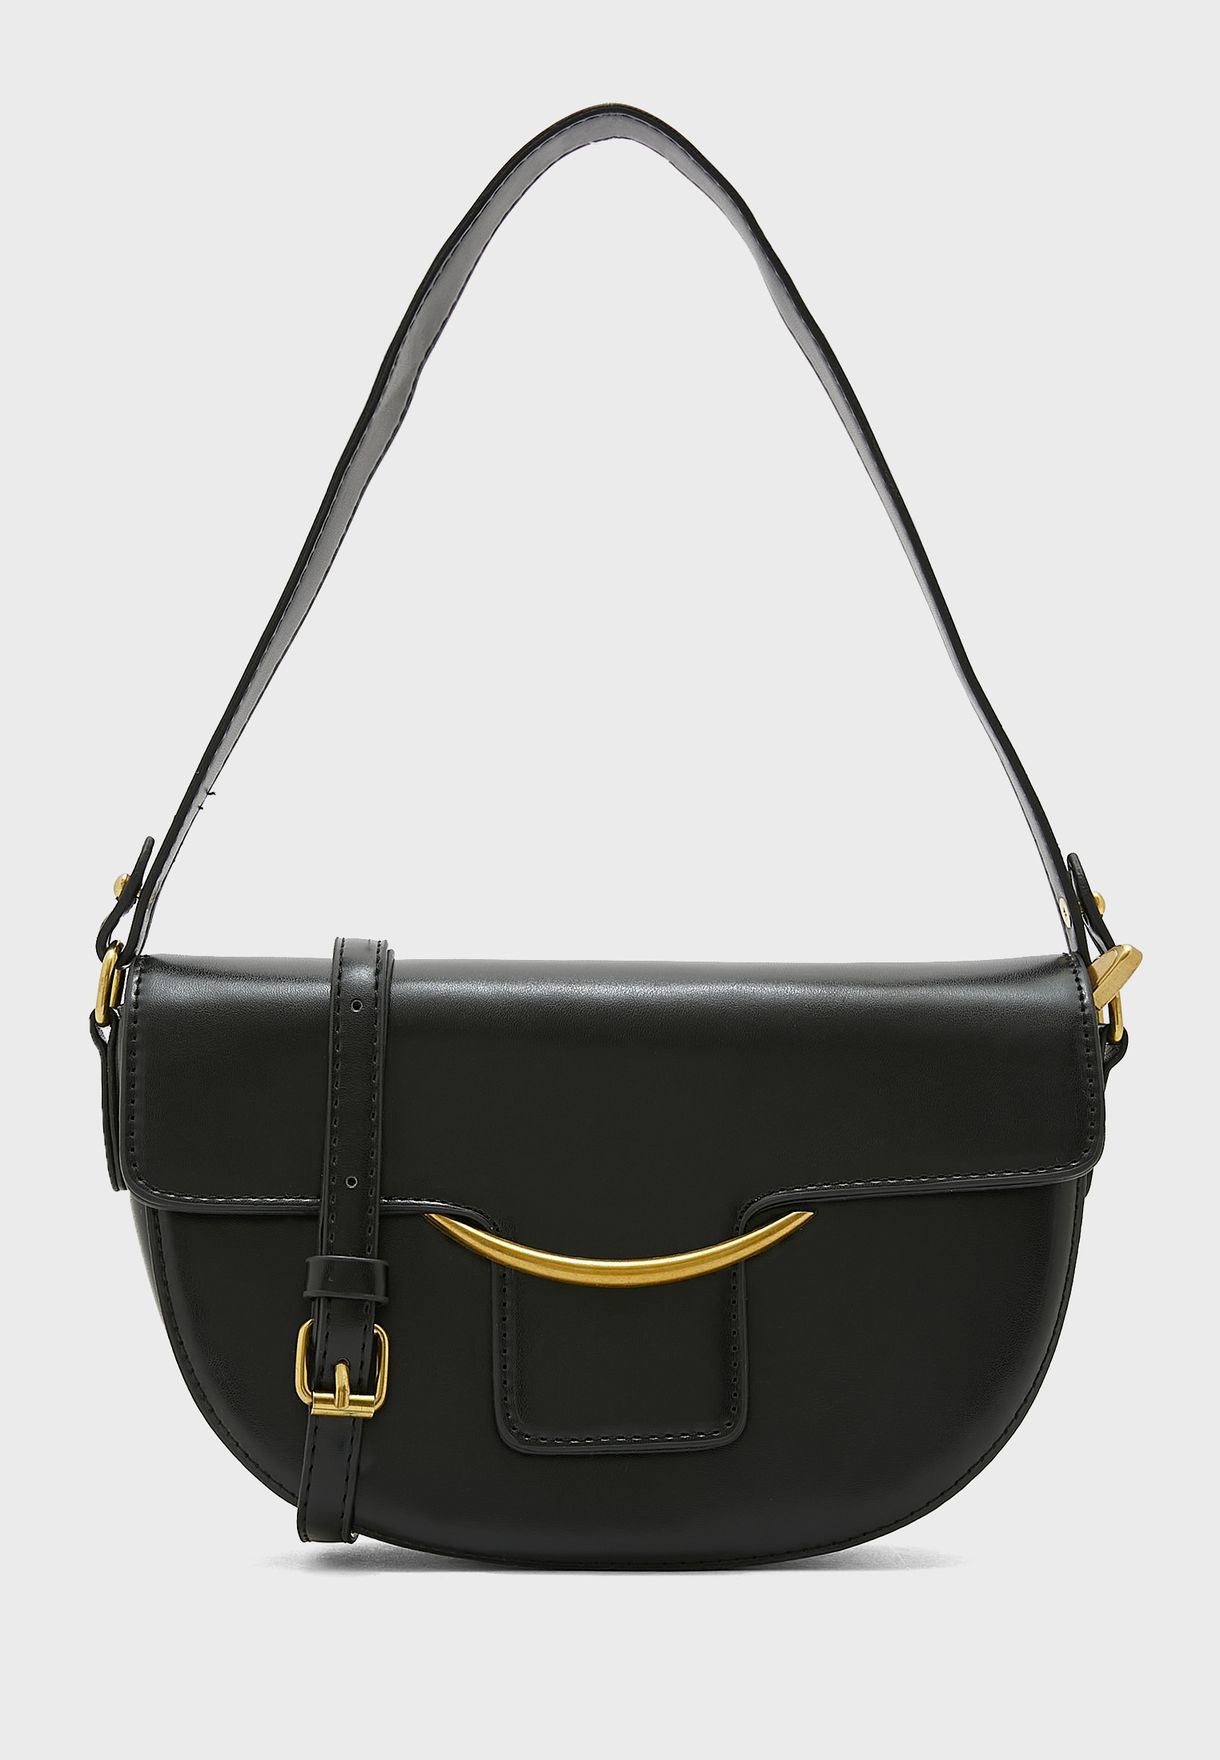 Minimal Handbag With Long And Short Straps